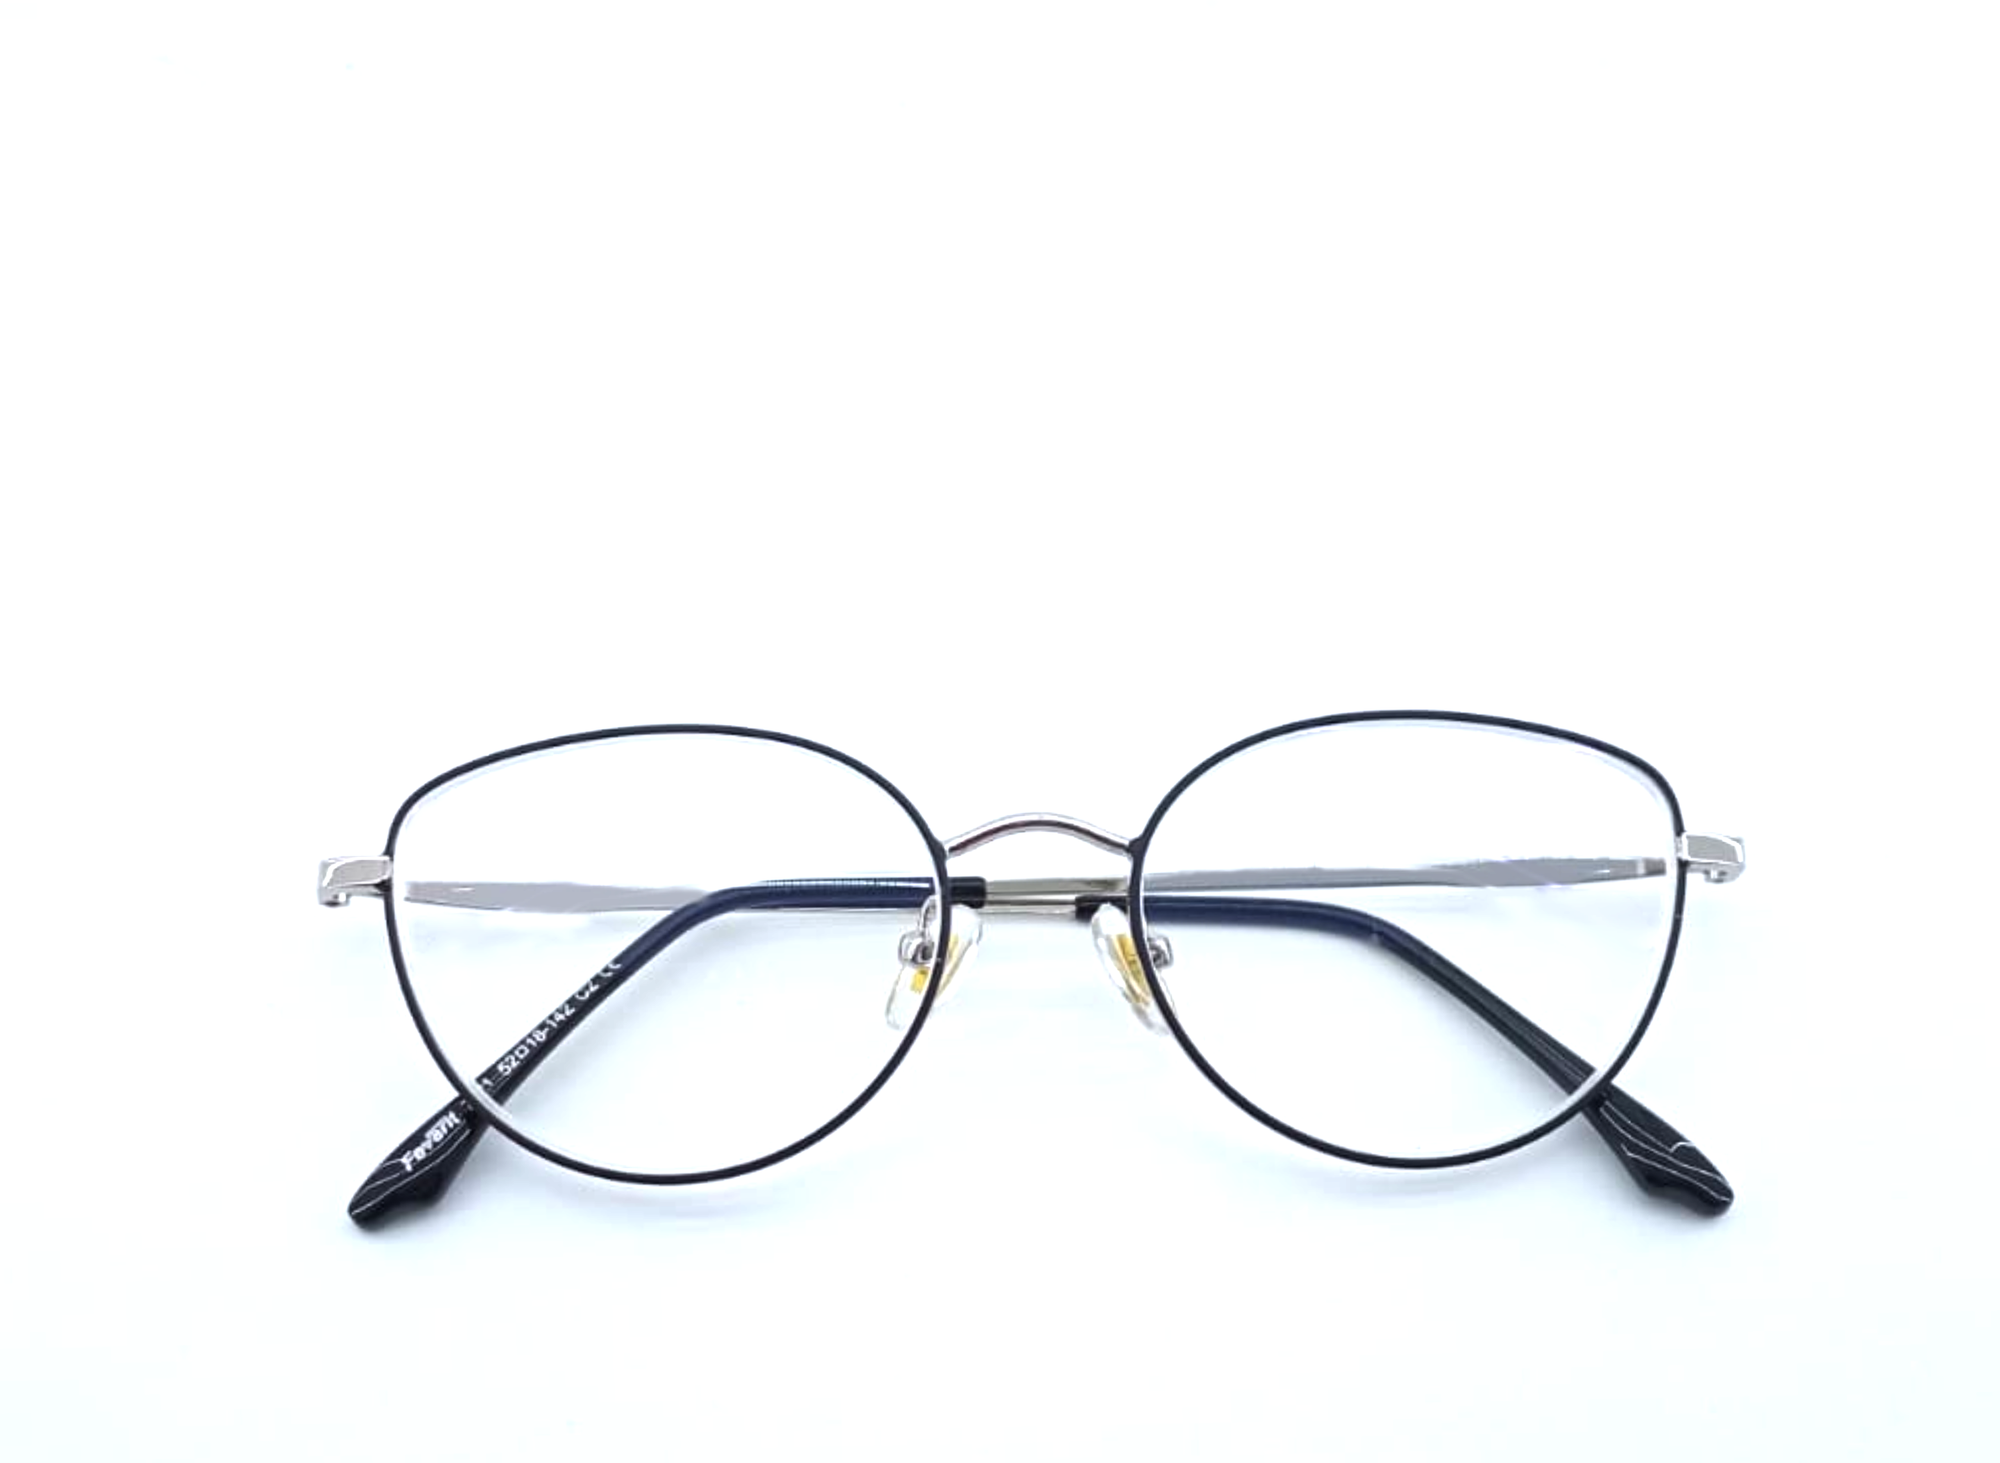 Готовые очки для зрения с межзрачковым расстоянием 58-60 мм и диоптриями +2.5